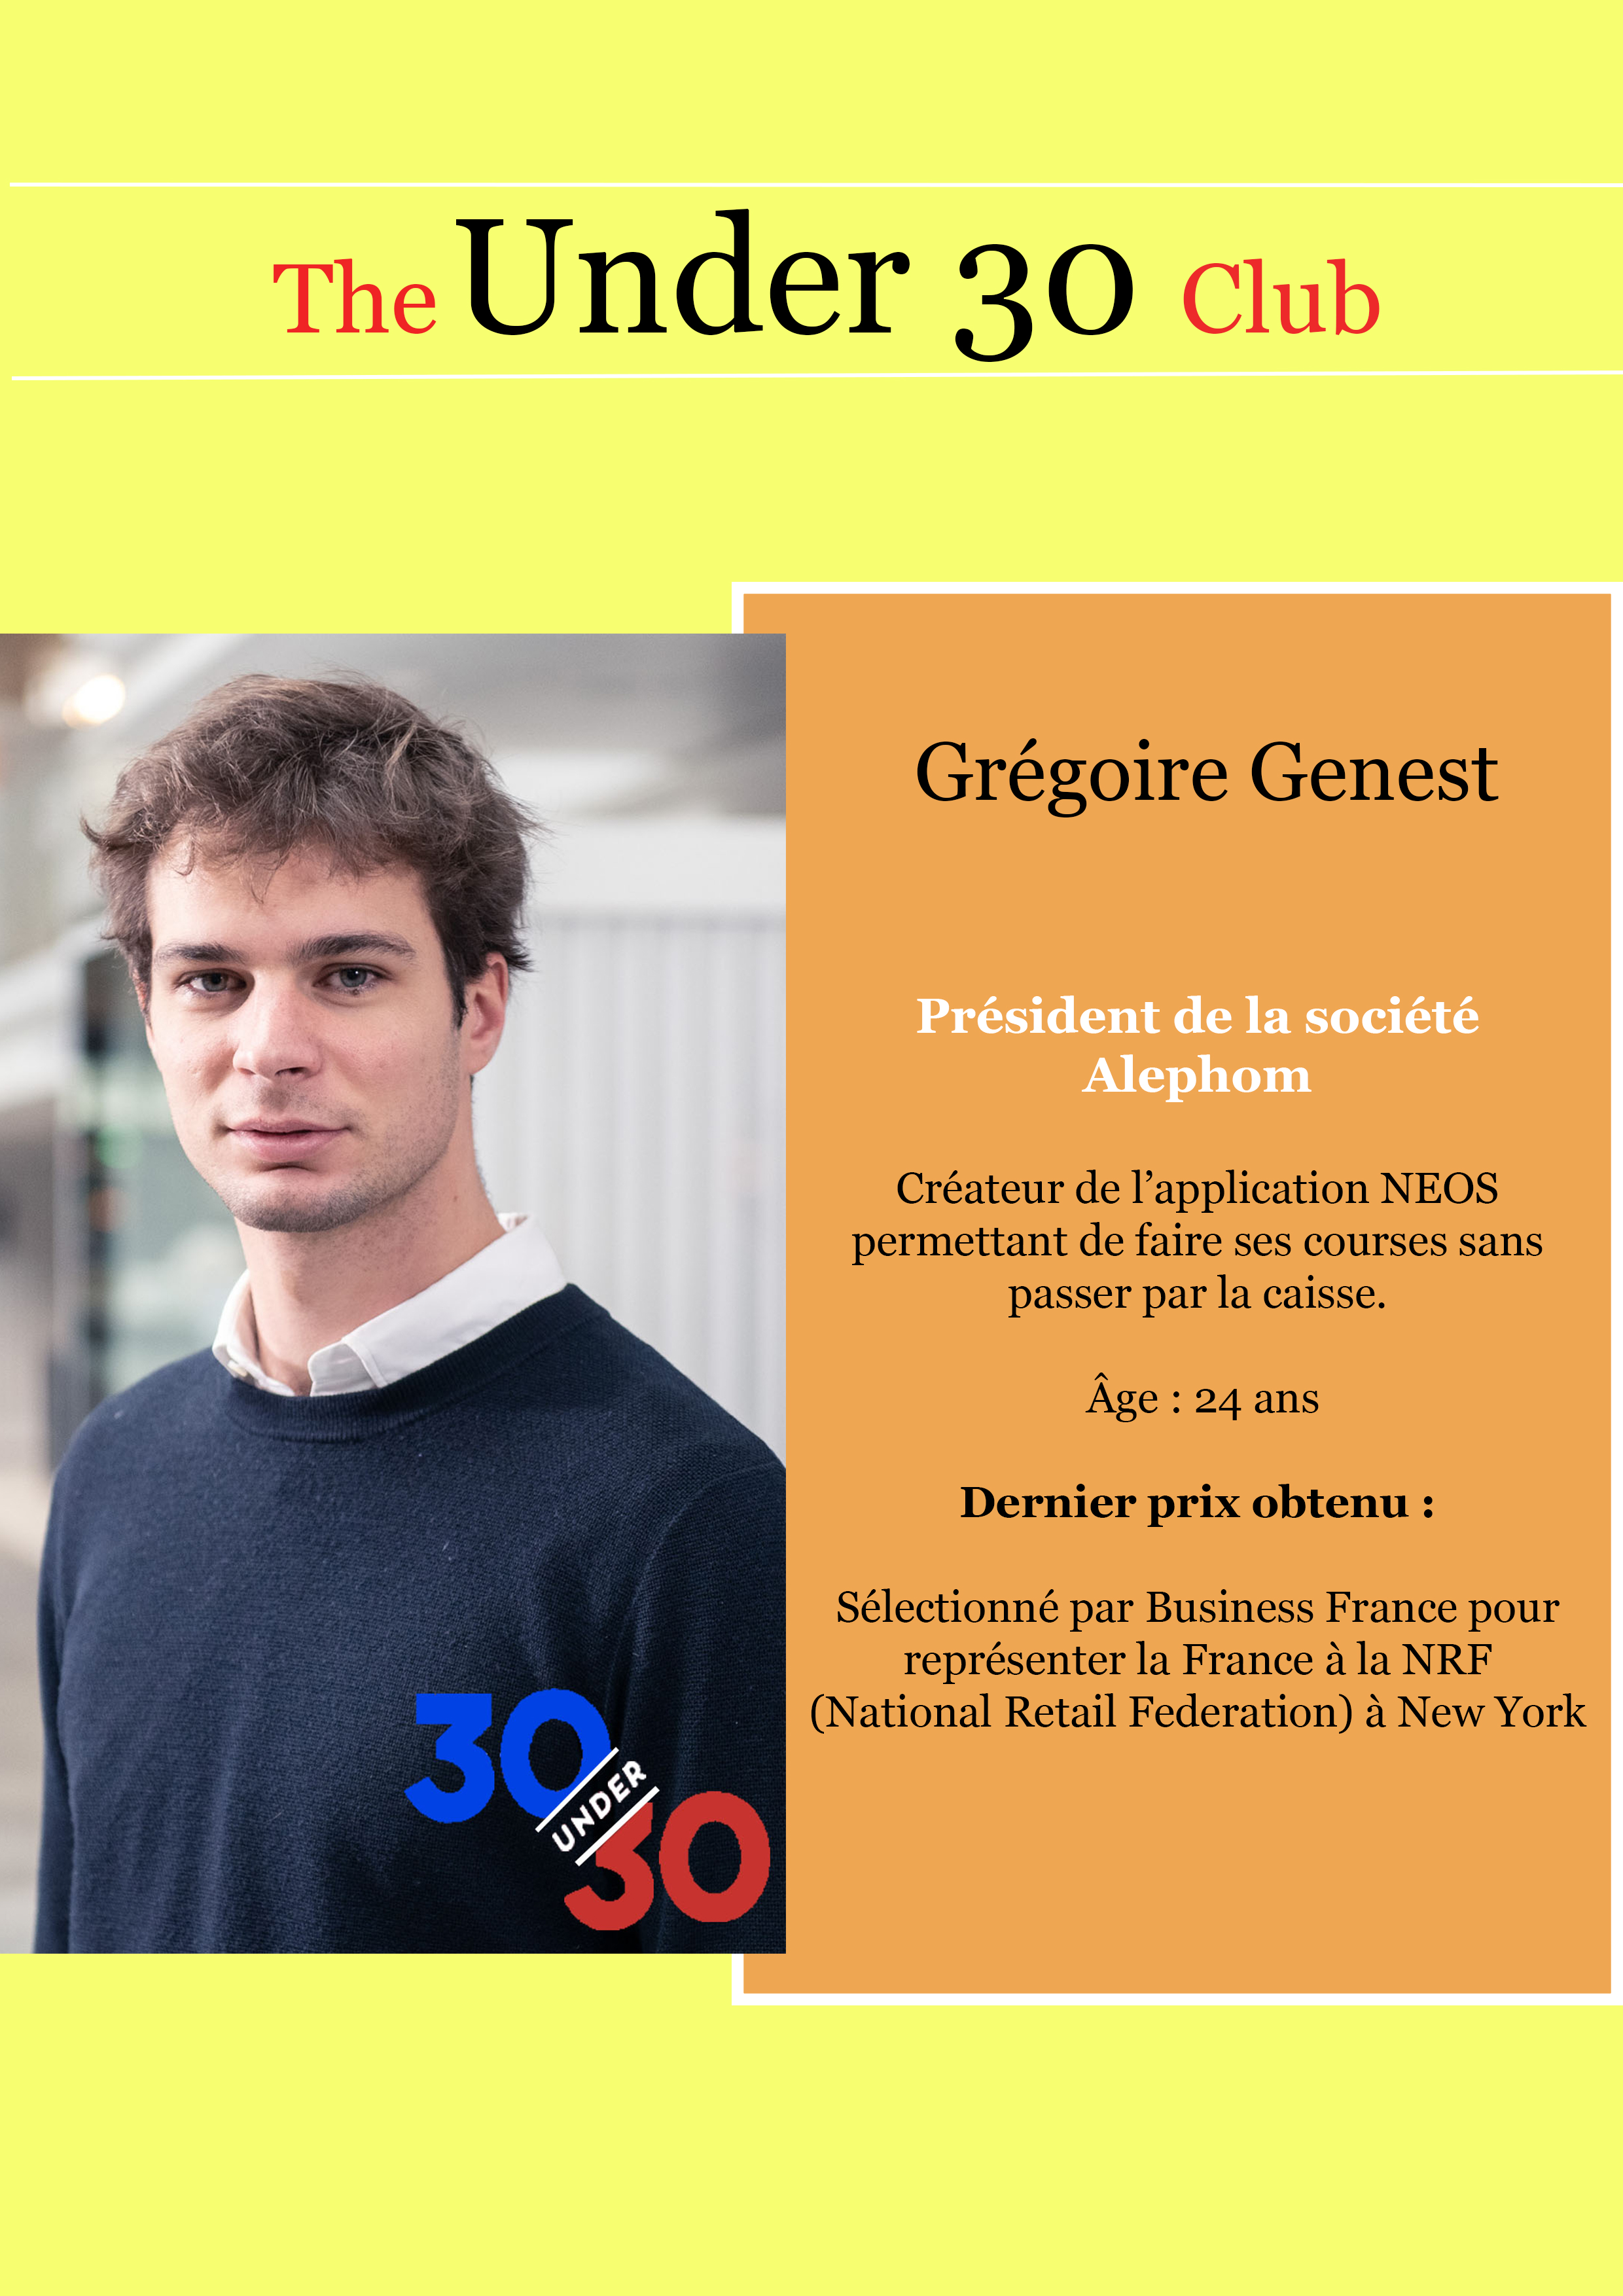 Gregoire Genest